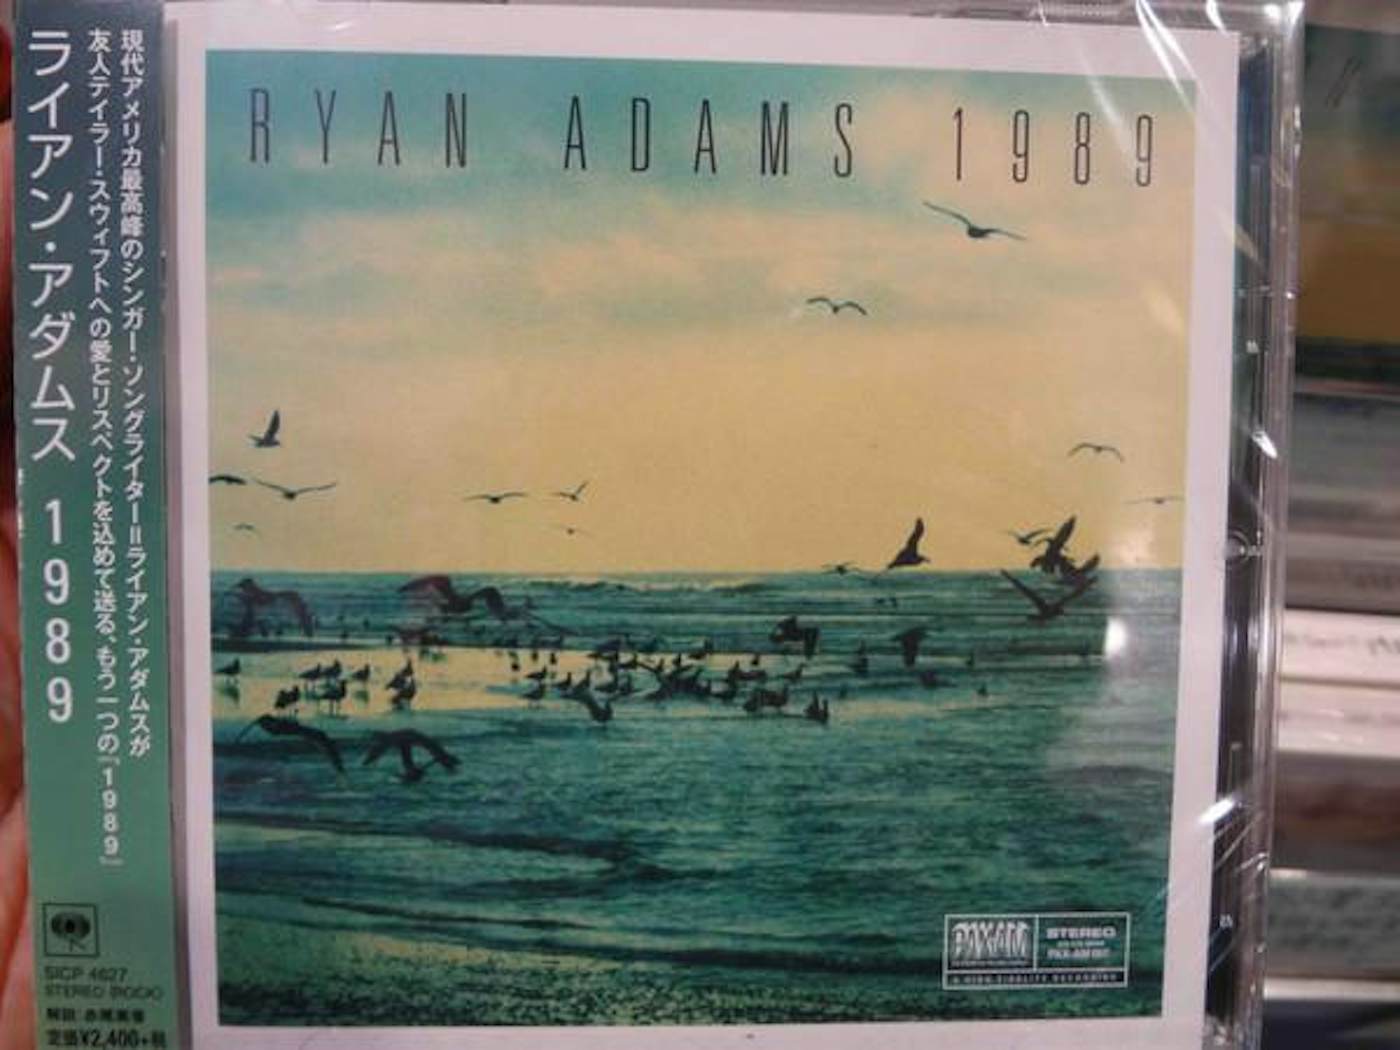 Ryan Adams 1989 CD